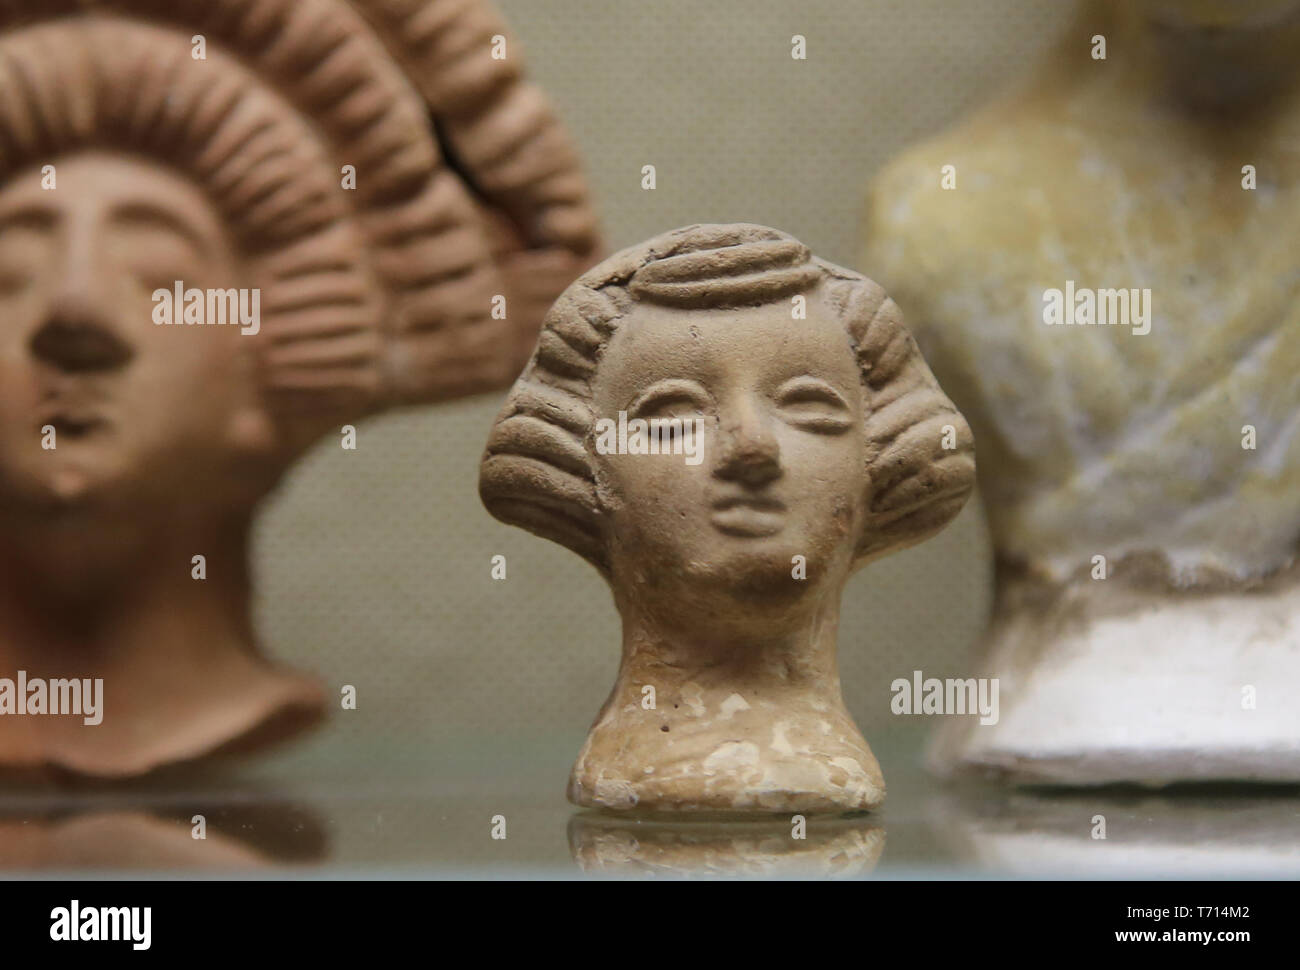 Tête en terre cuite romaine avec coiffure. Musée archéologique de Séville. L'Espagne. Banque D'Images